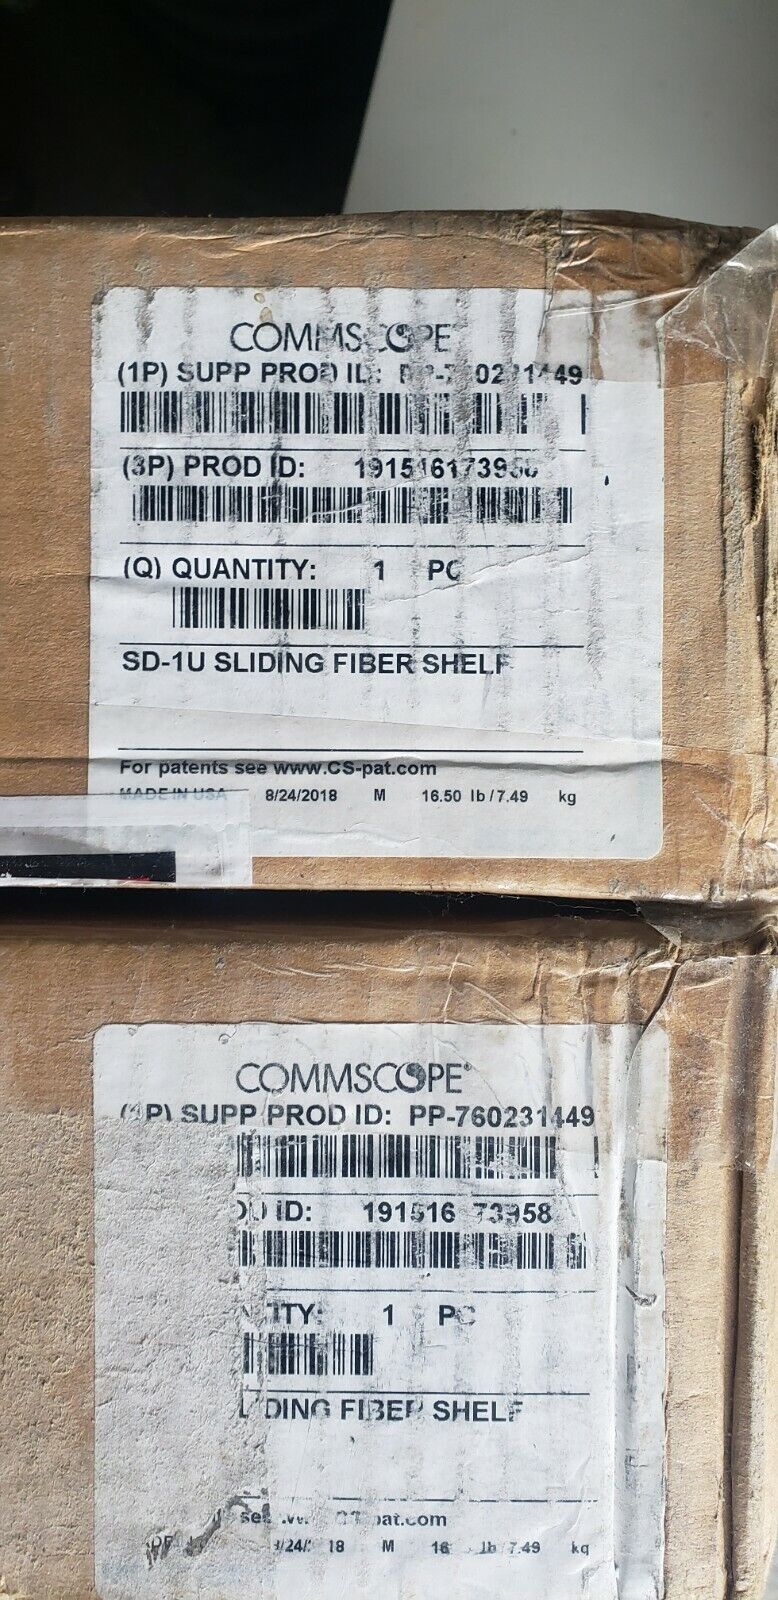 Brand new-Commscope Fiber Enclosure PP-760231449 SD- 1 U Sliding Fiber Shelf 